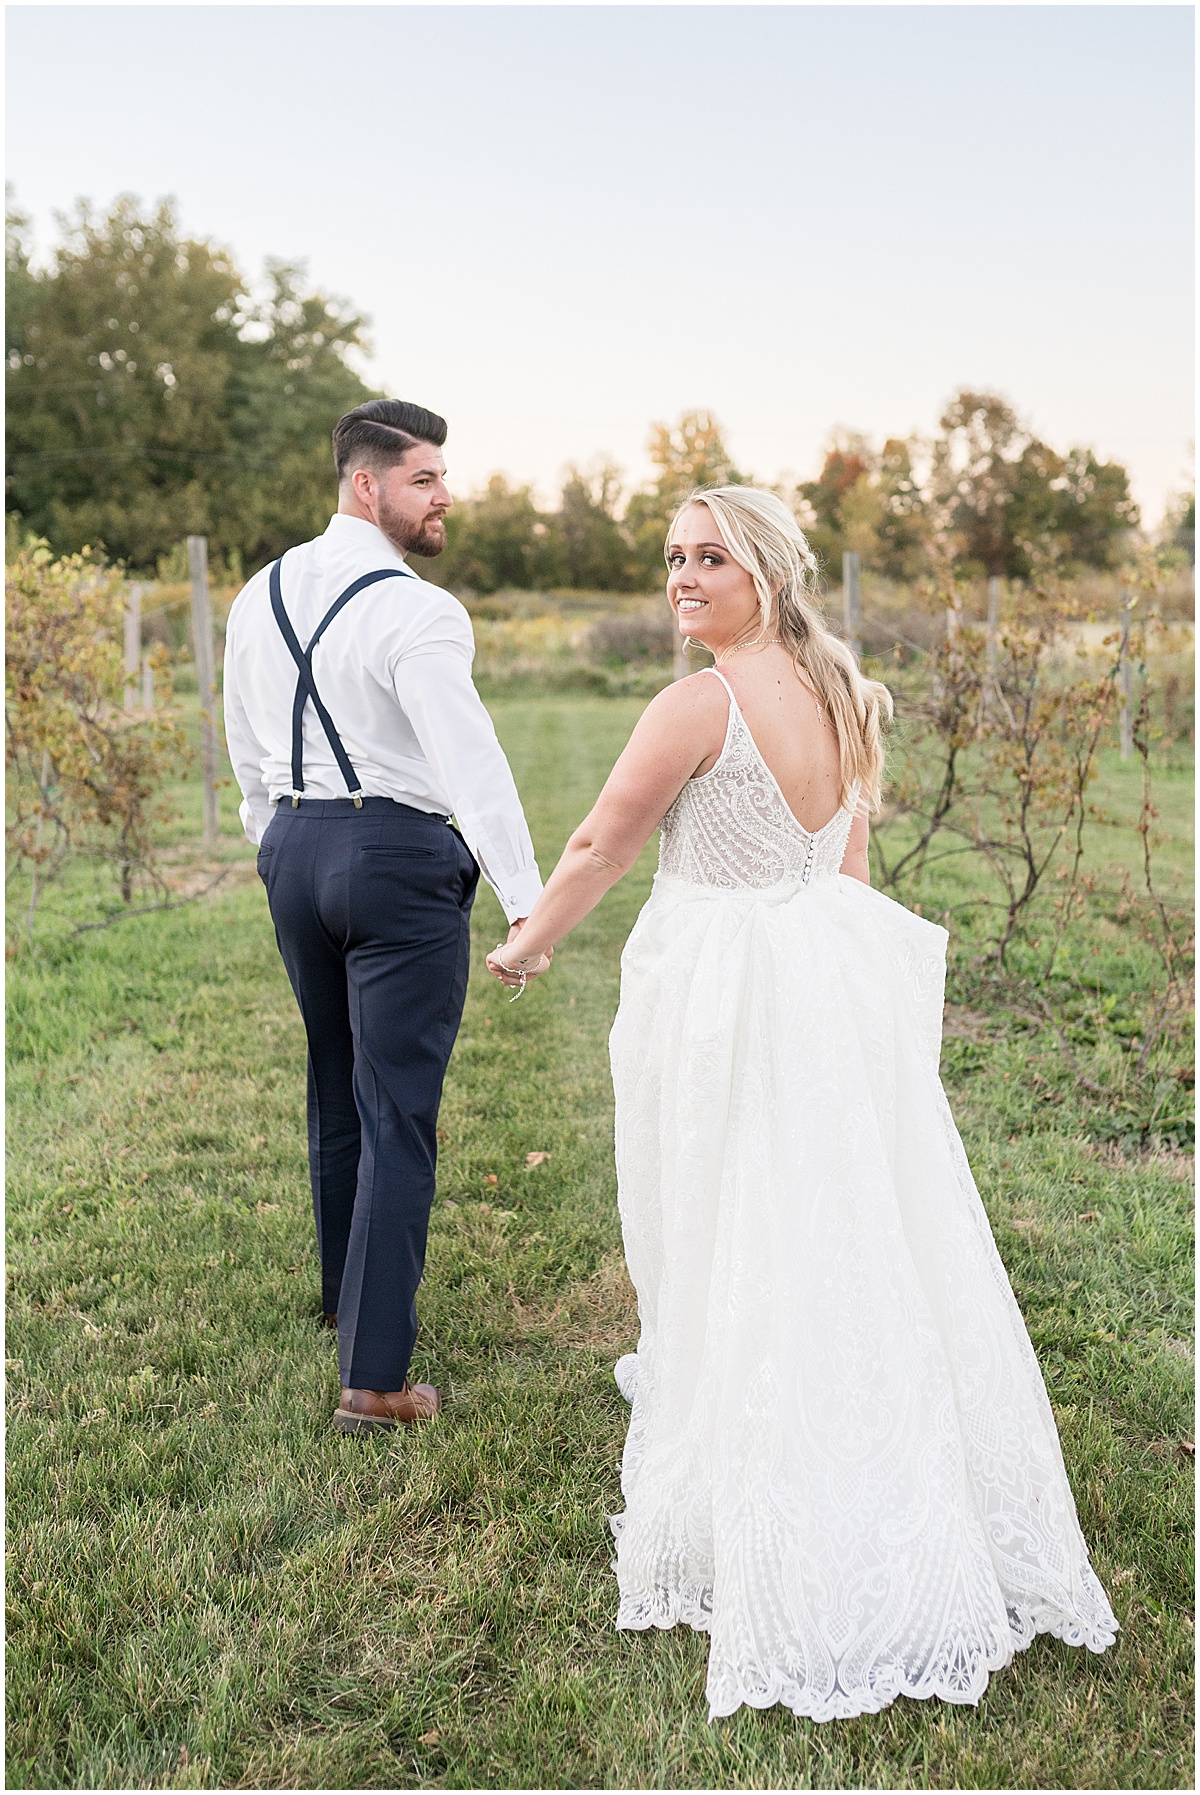  Finley Creek Vineyards wedding in Zionsville, Indiana